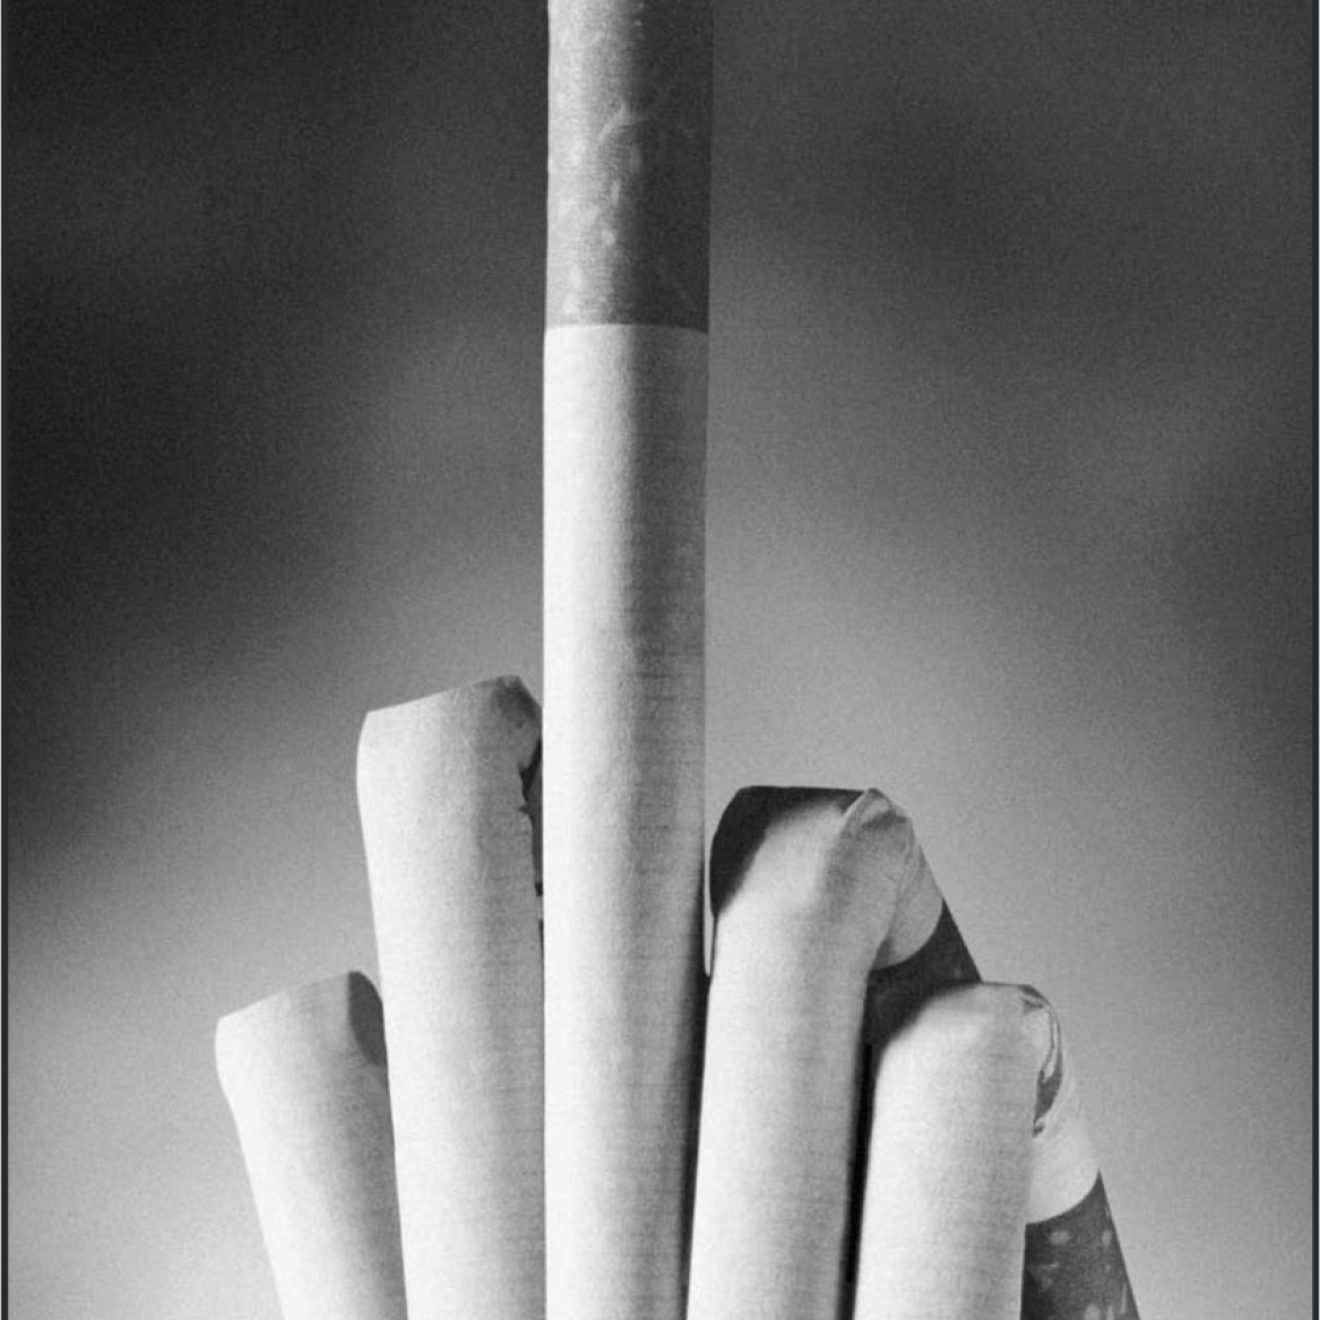 « L’avertissement de l’industrie du tabac est clair et net ». Image archivée dans le cadre du Programme de Recherche sur l’impact de la publicité cigarettière (SRITA), Université de Stanford.